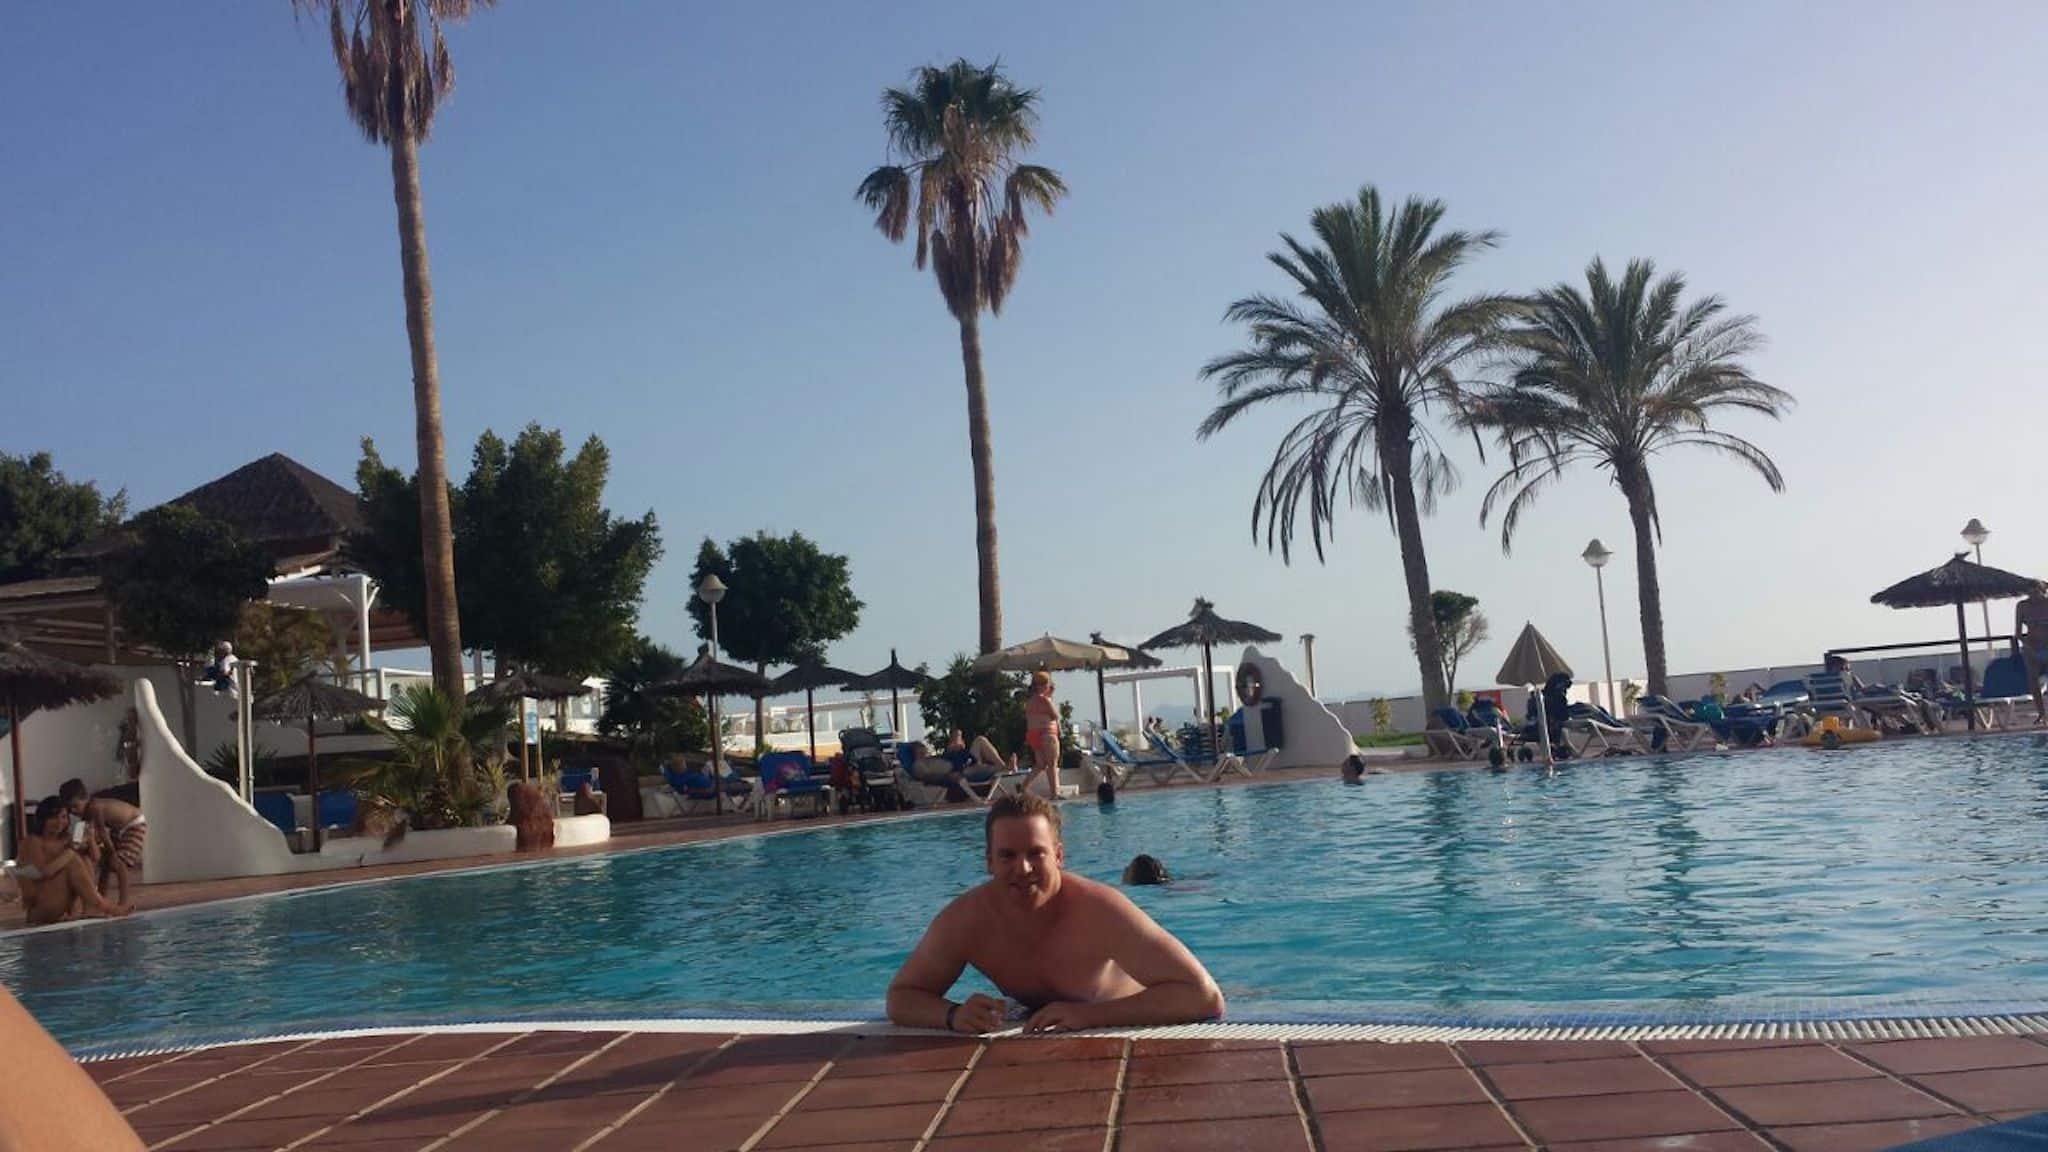 Carnet de voyage Lanzarote : Après être arrivés à l'hôtel Sandos Papagayo, nous nous sommes d'abord relaxés dans la piscine.